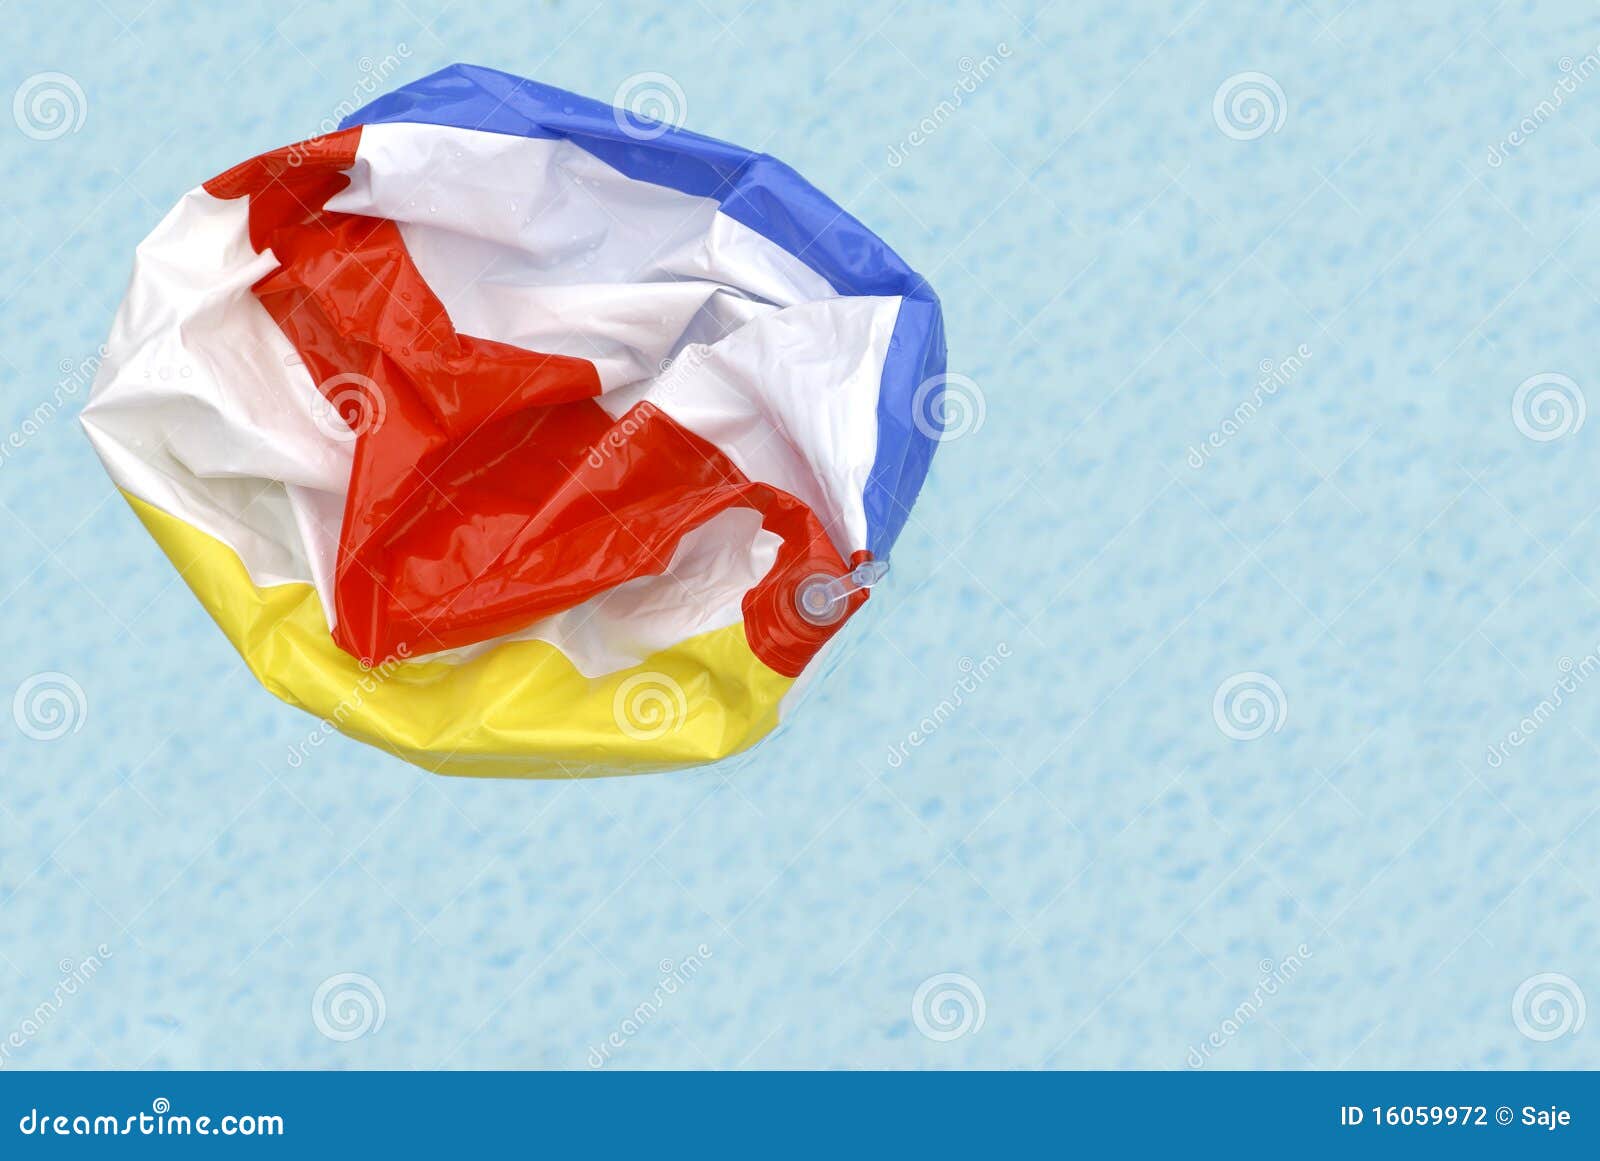 deflated beach ball in pool